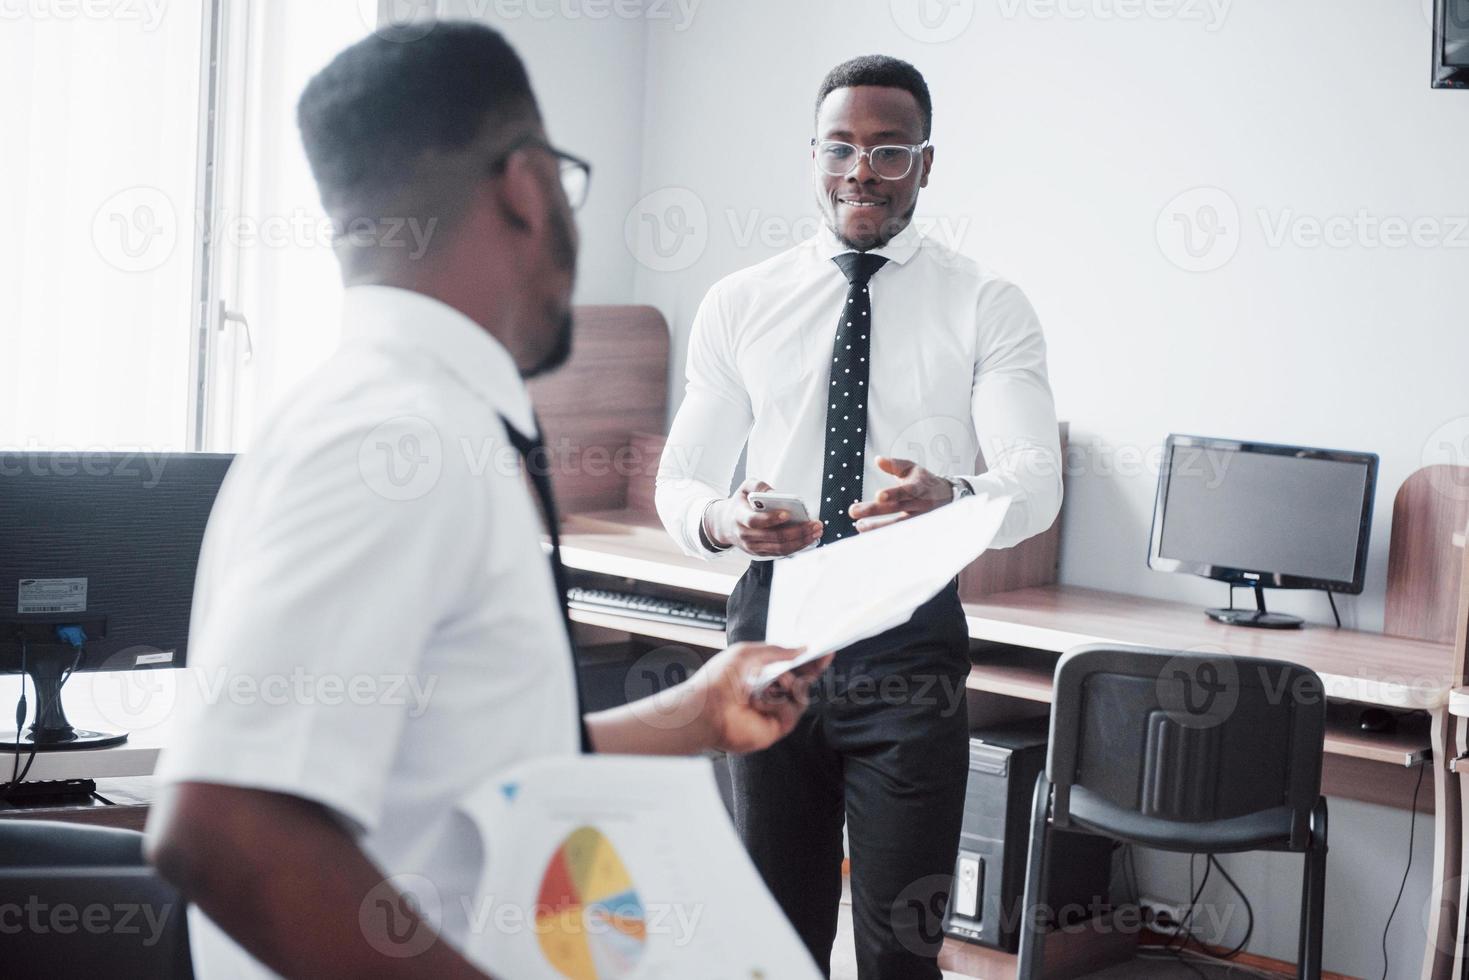 discutir um projeto. dois empresários negros em trajes formais discutindo algo enquanto um deles apontando um papel foto